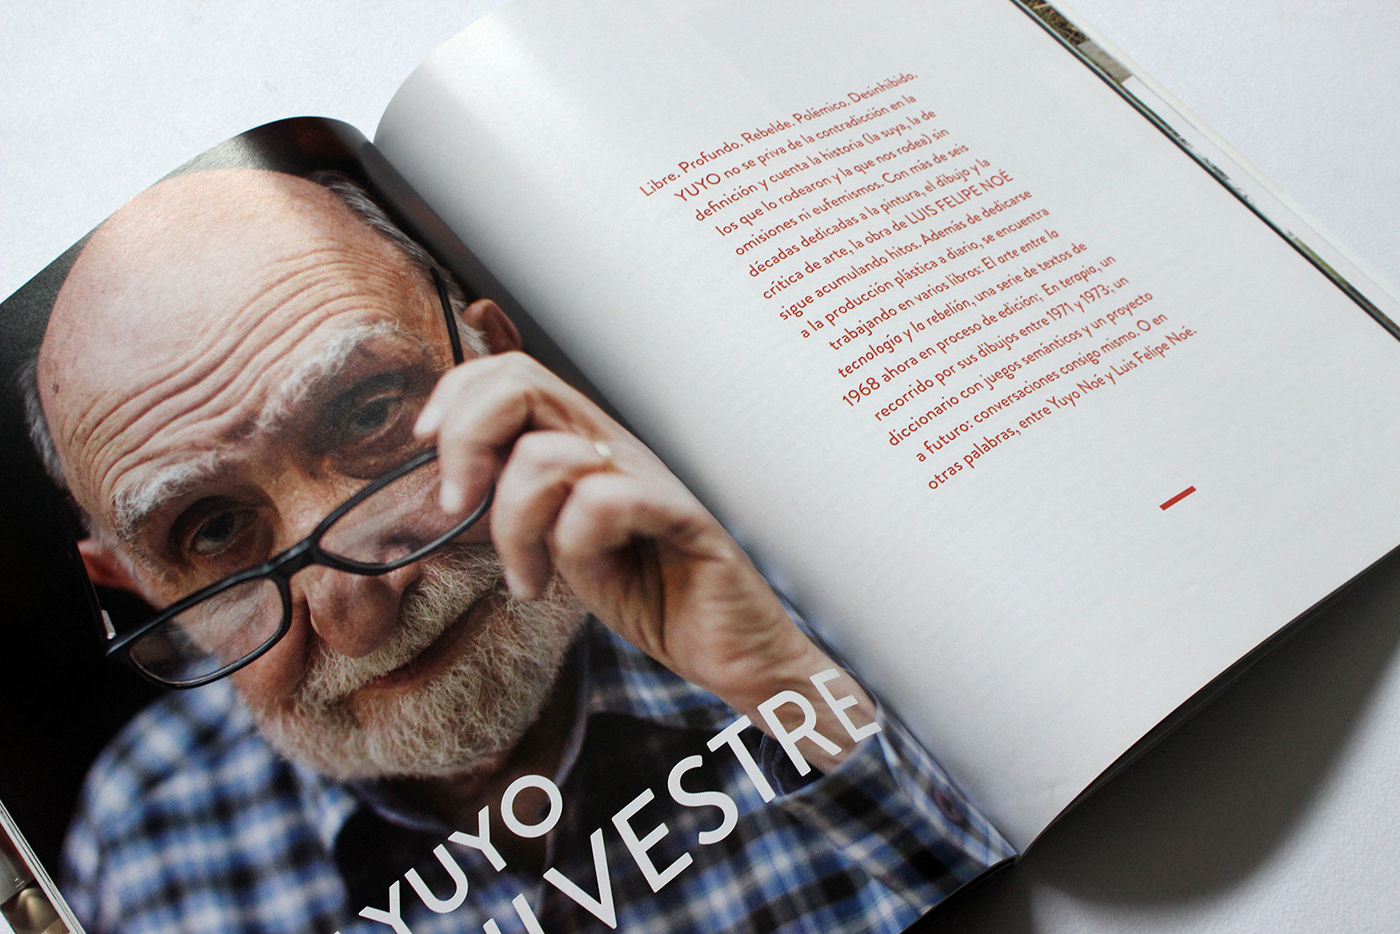 diseño arquitectura revista interiores tapa editorial design  graphic design  magazine